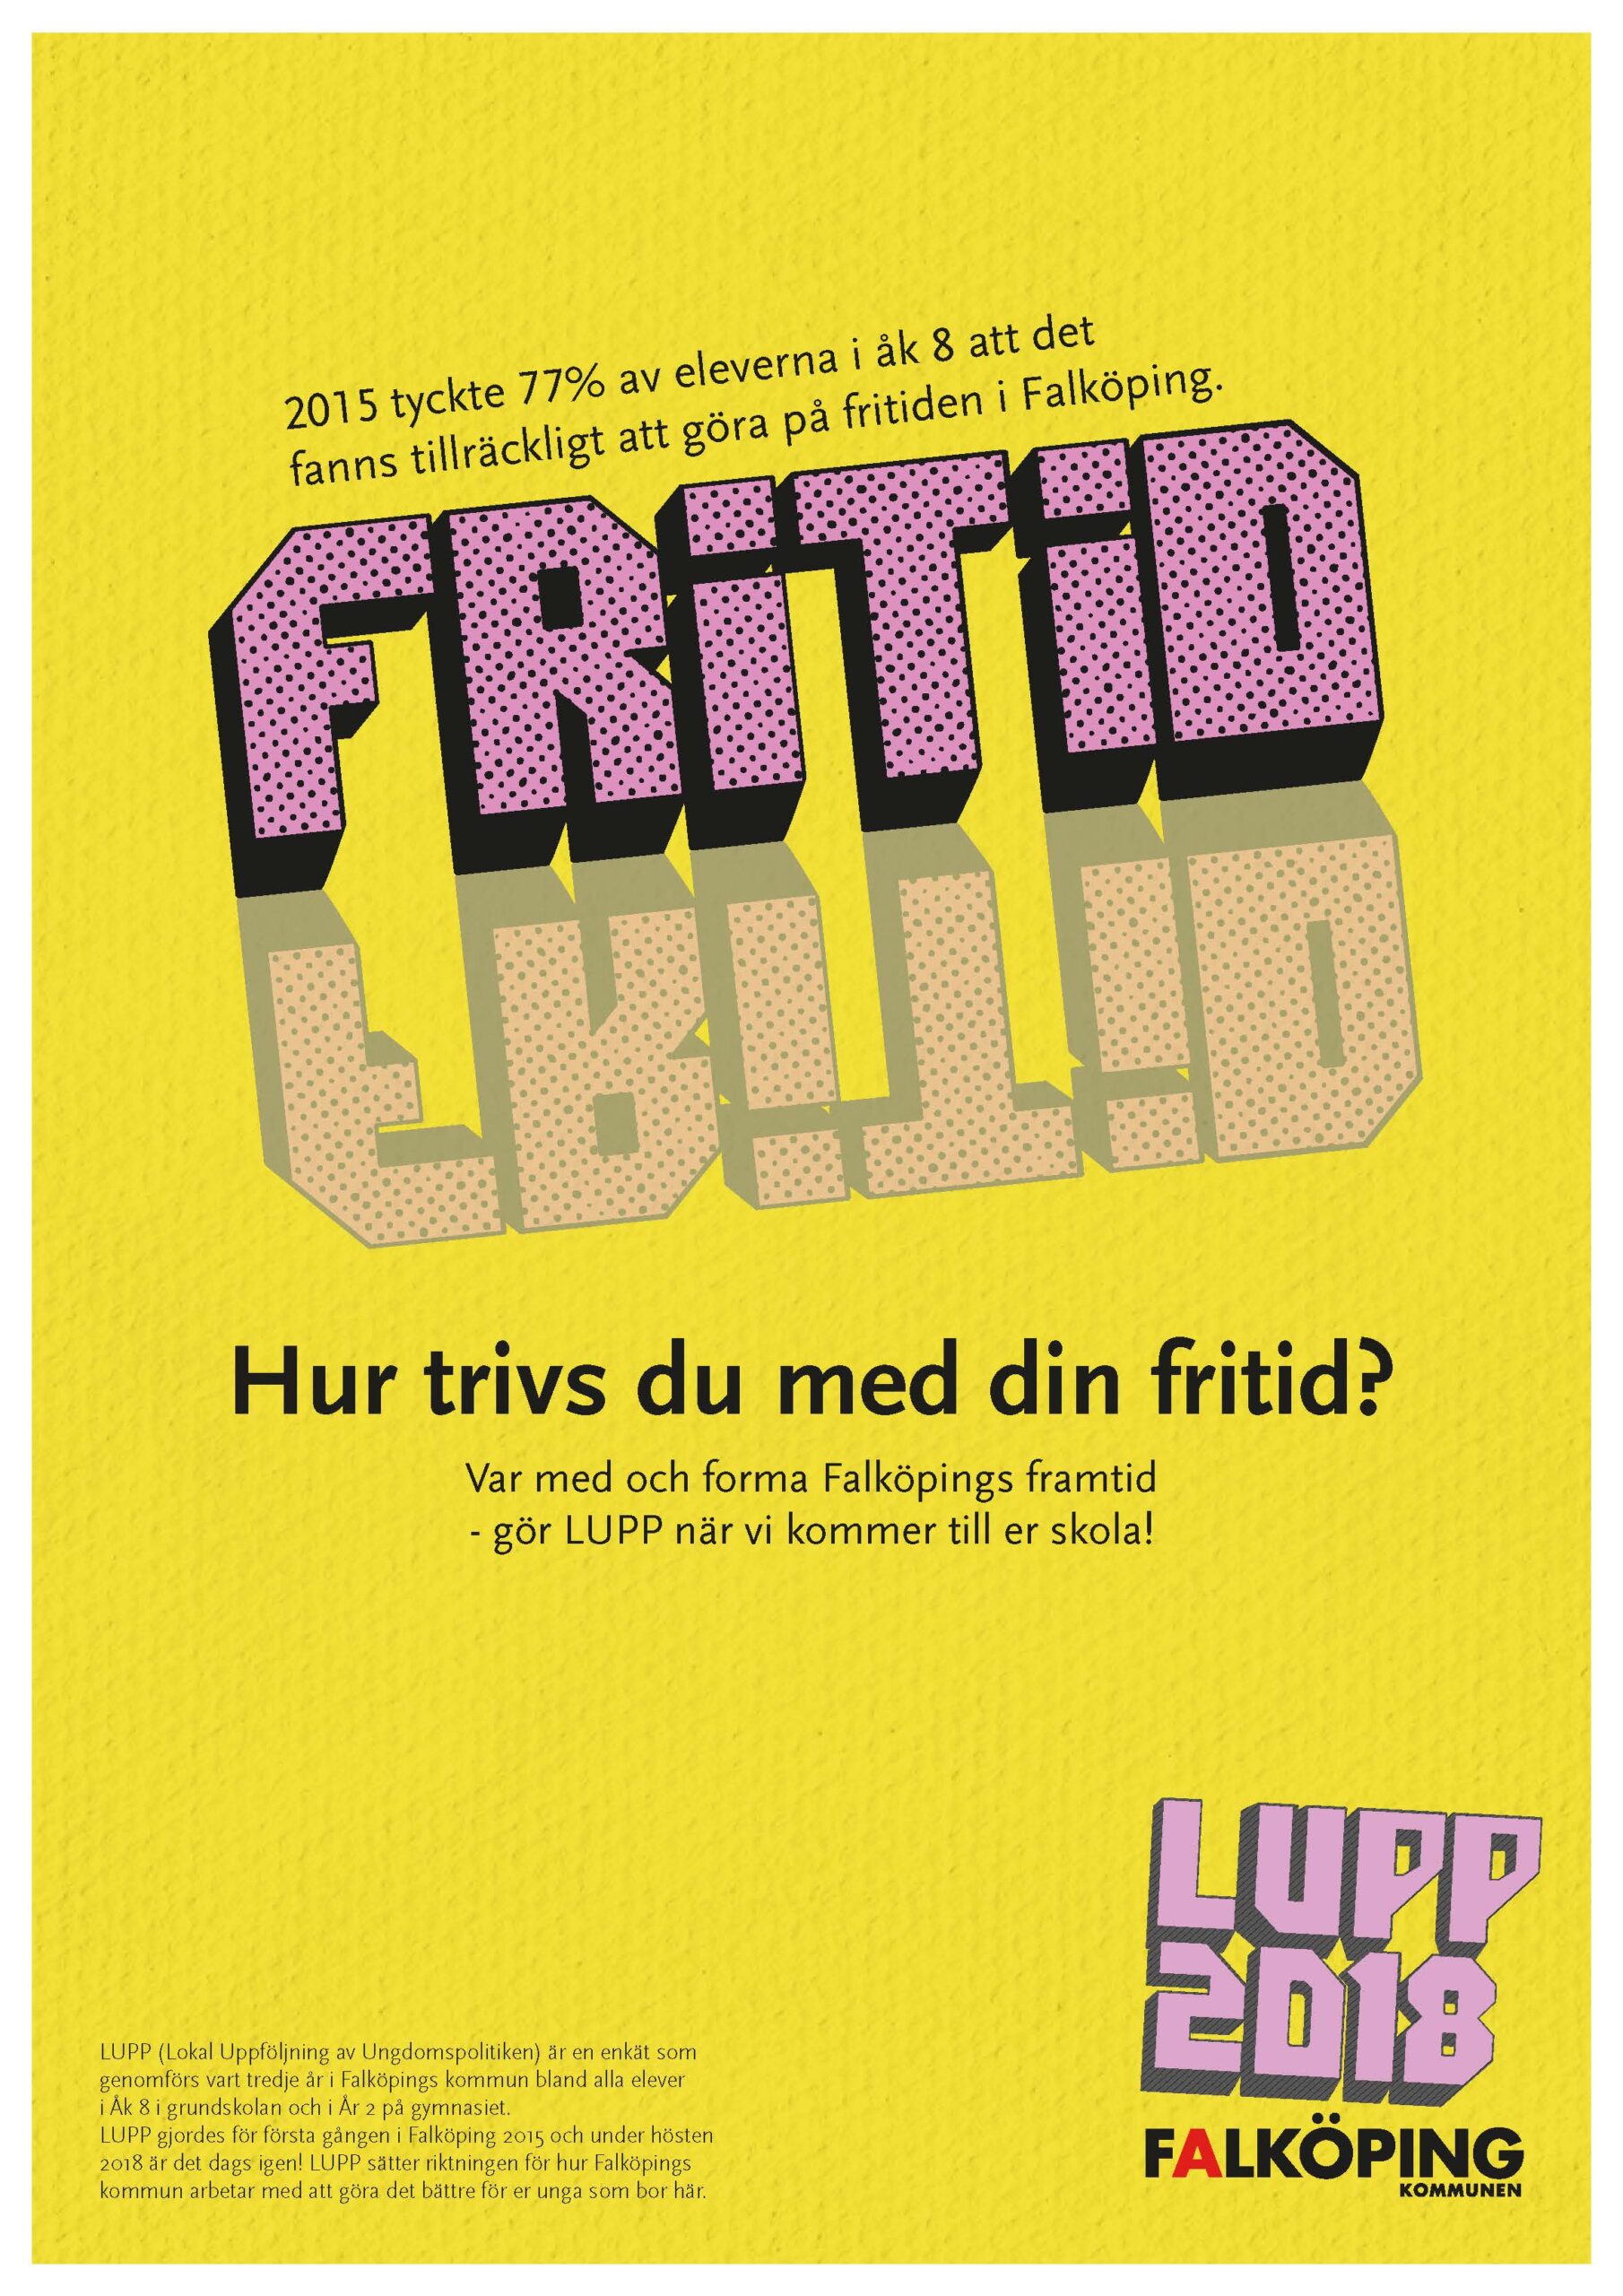 LUPP, falköpings kommun, logotype och affischer